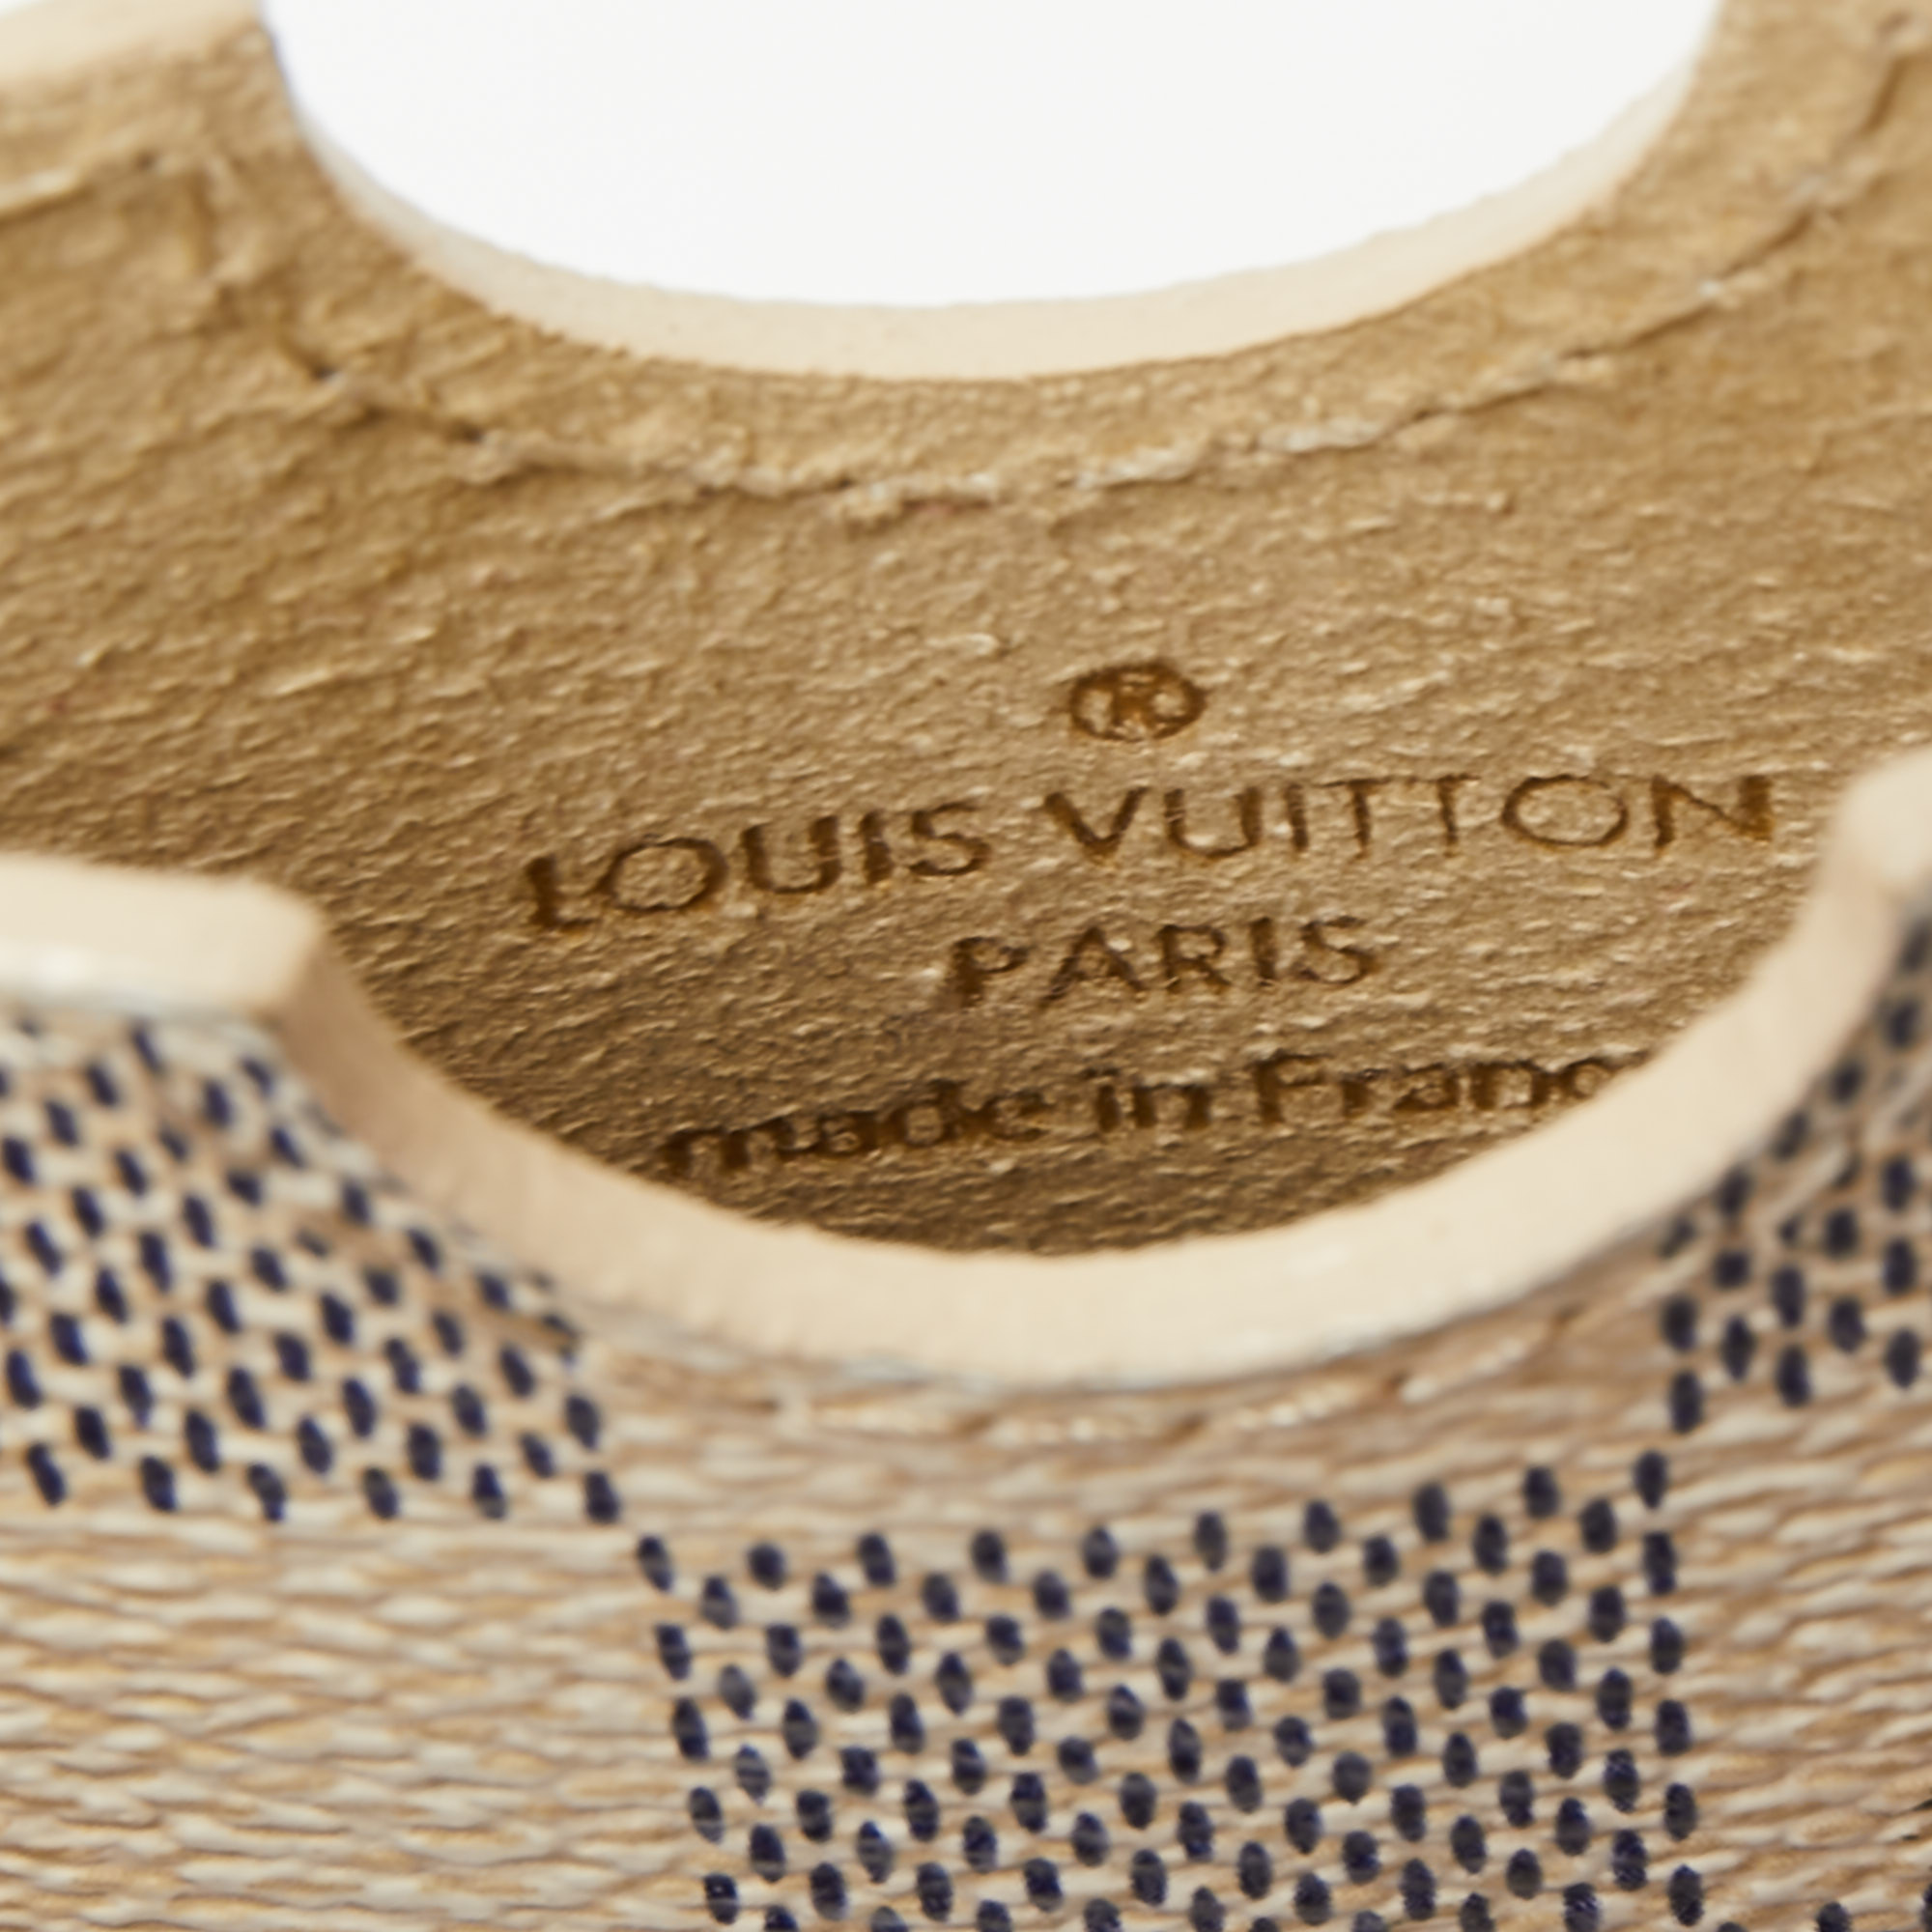 Louis Vuitton Damier Azur Canvas IPhone 4 Cover